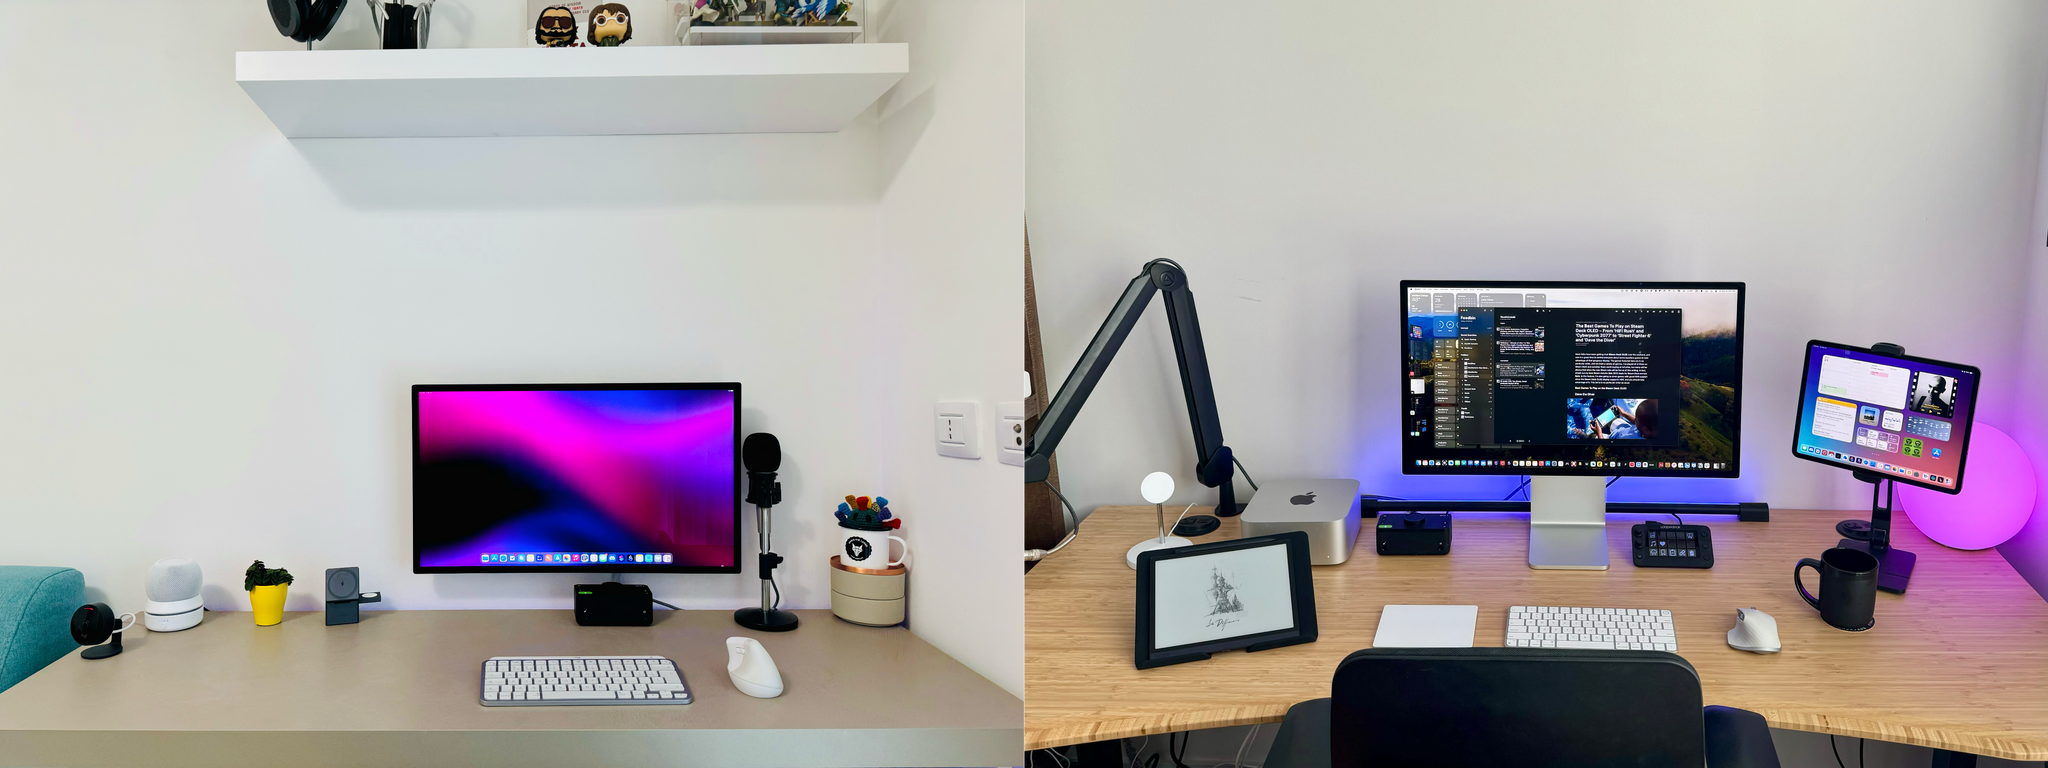 Our desk setups.